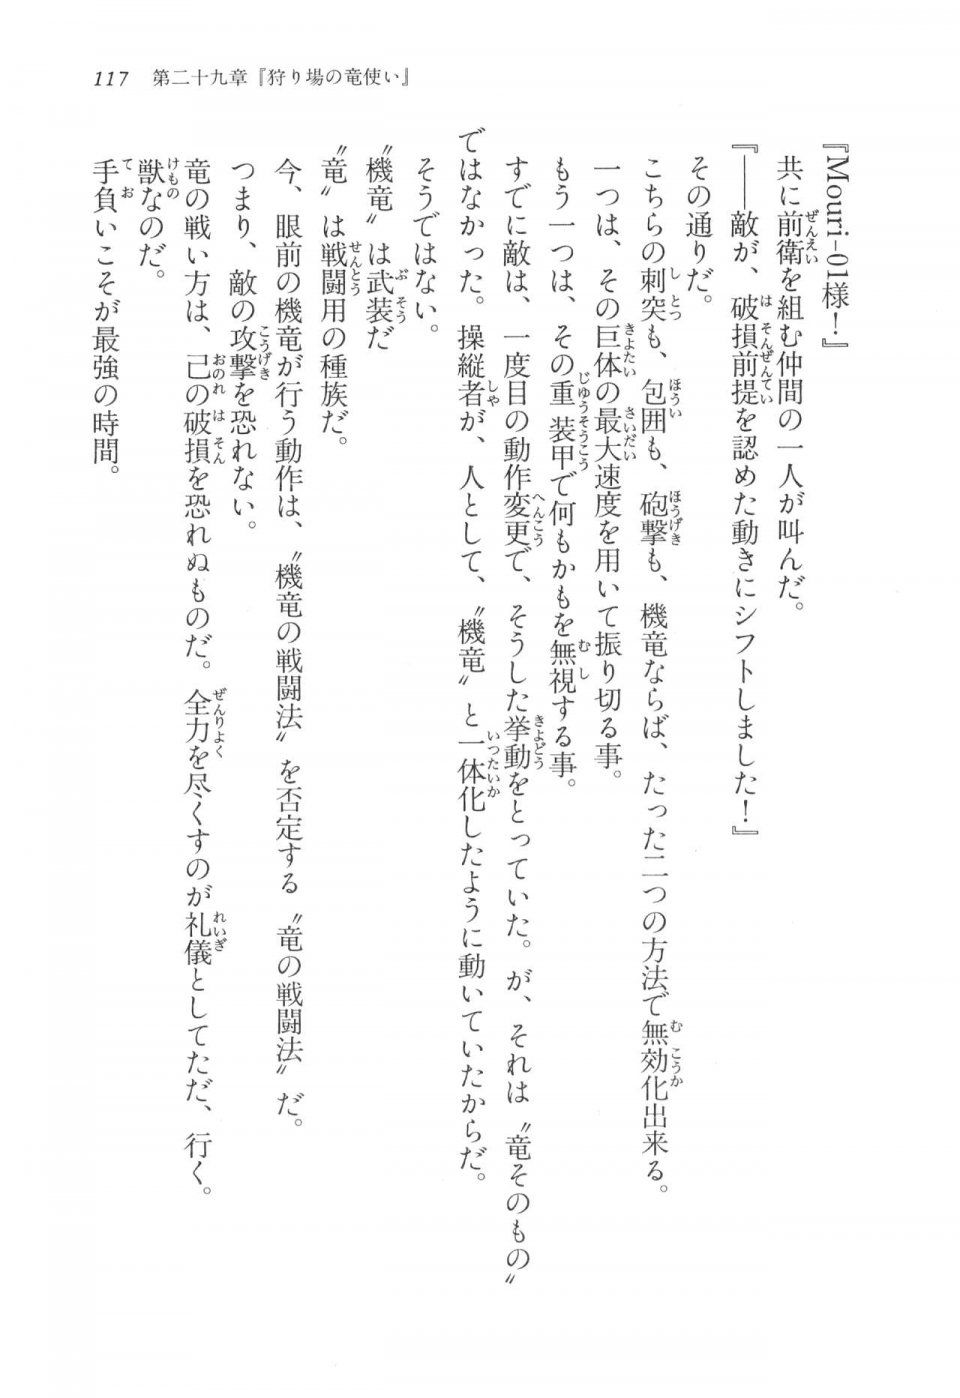 Kyoukai Senjou no Horizon LN Vol 17(7B) - Photo #117